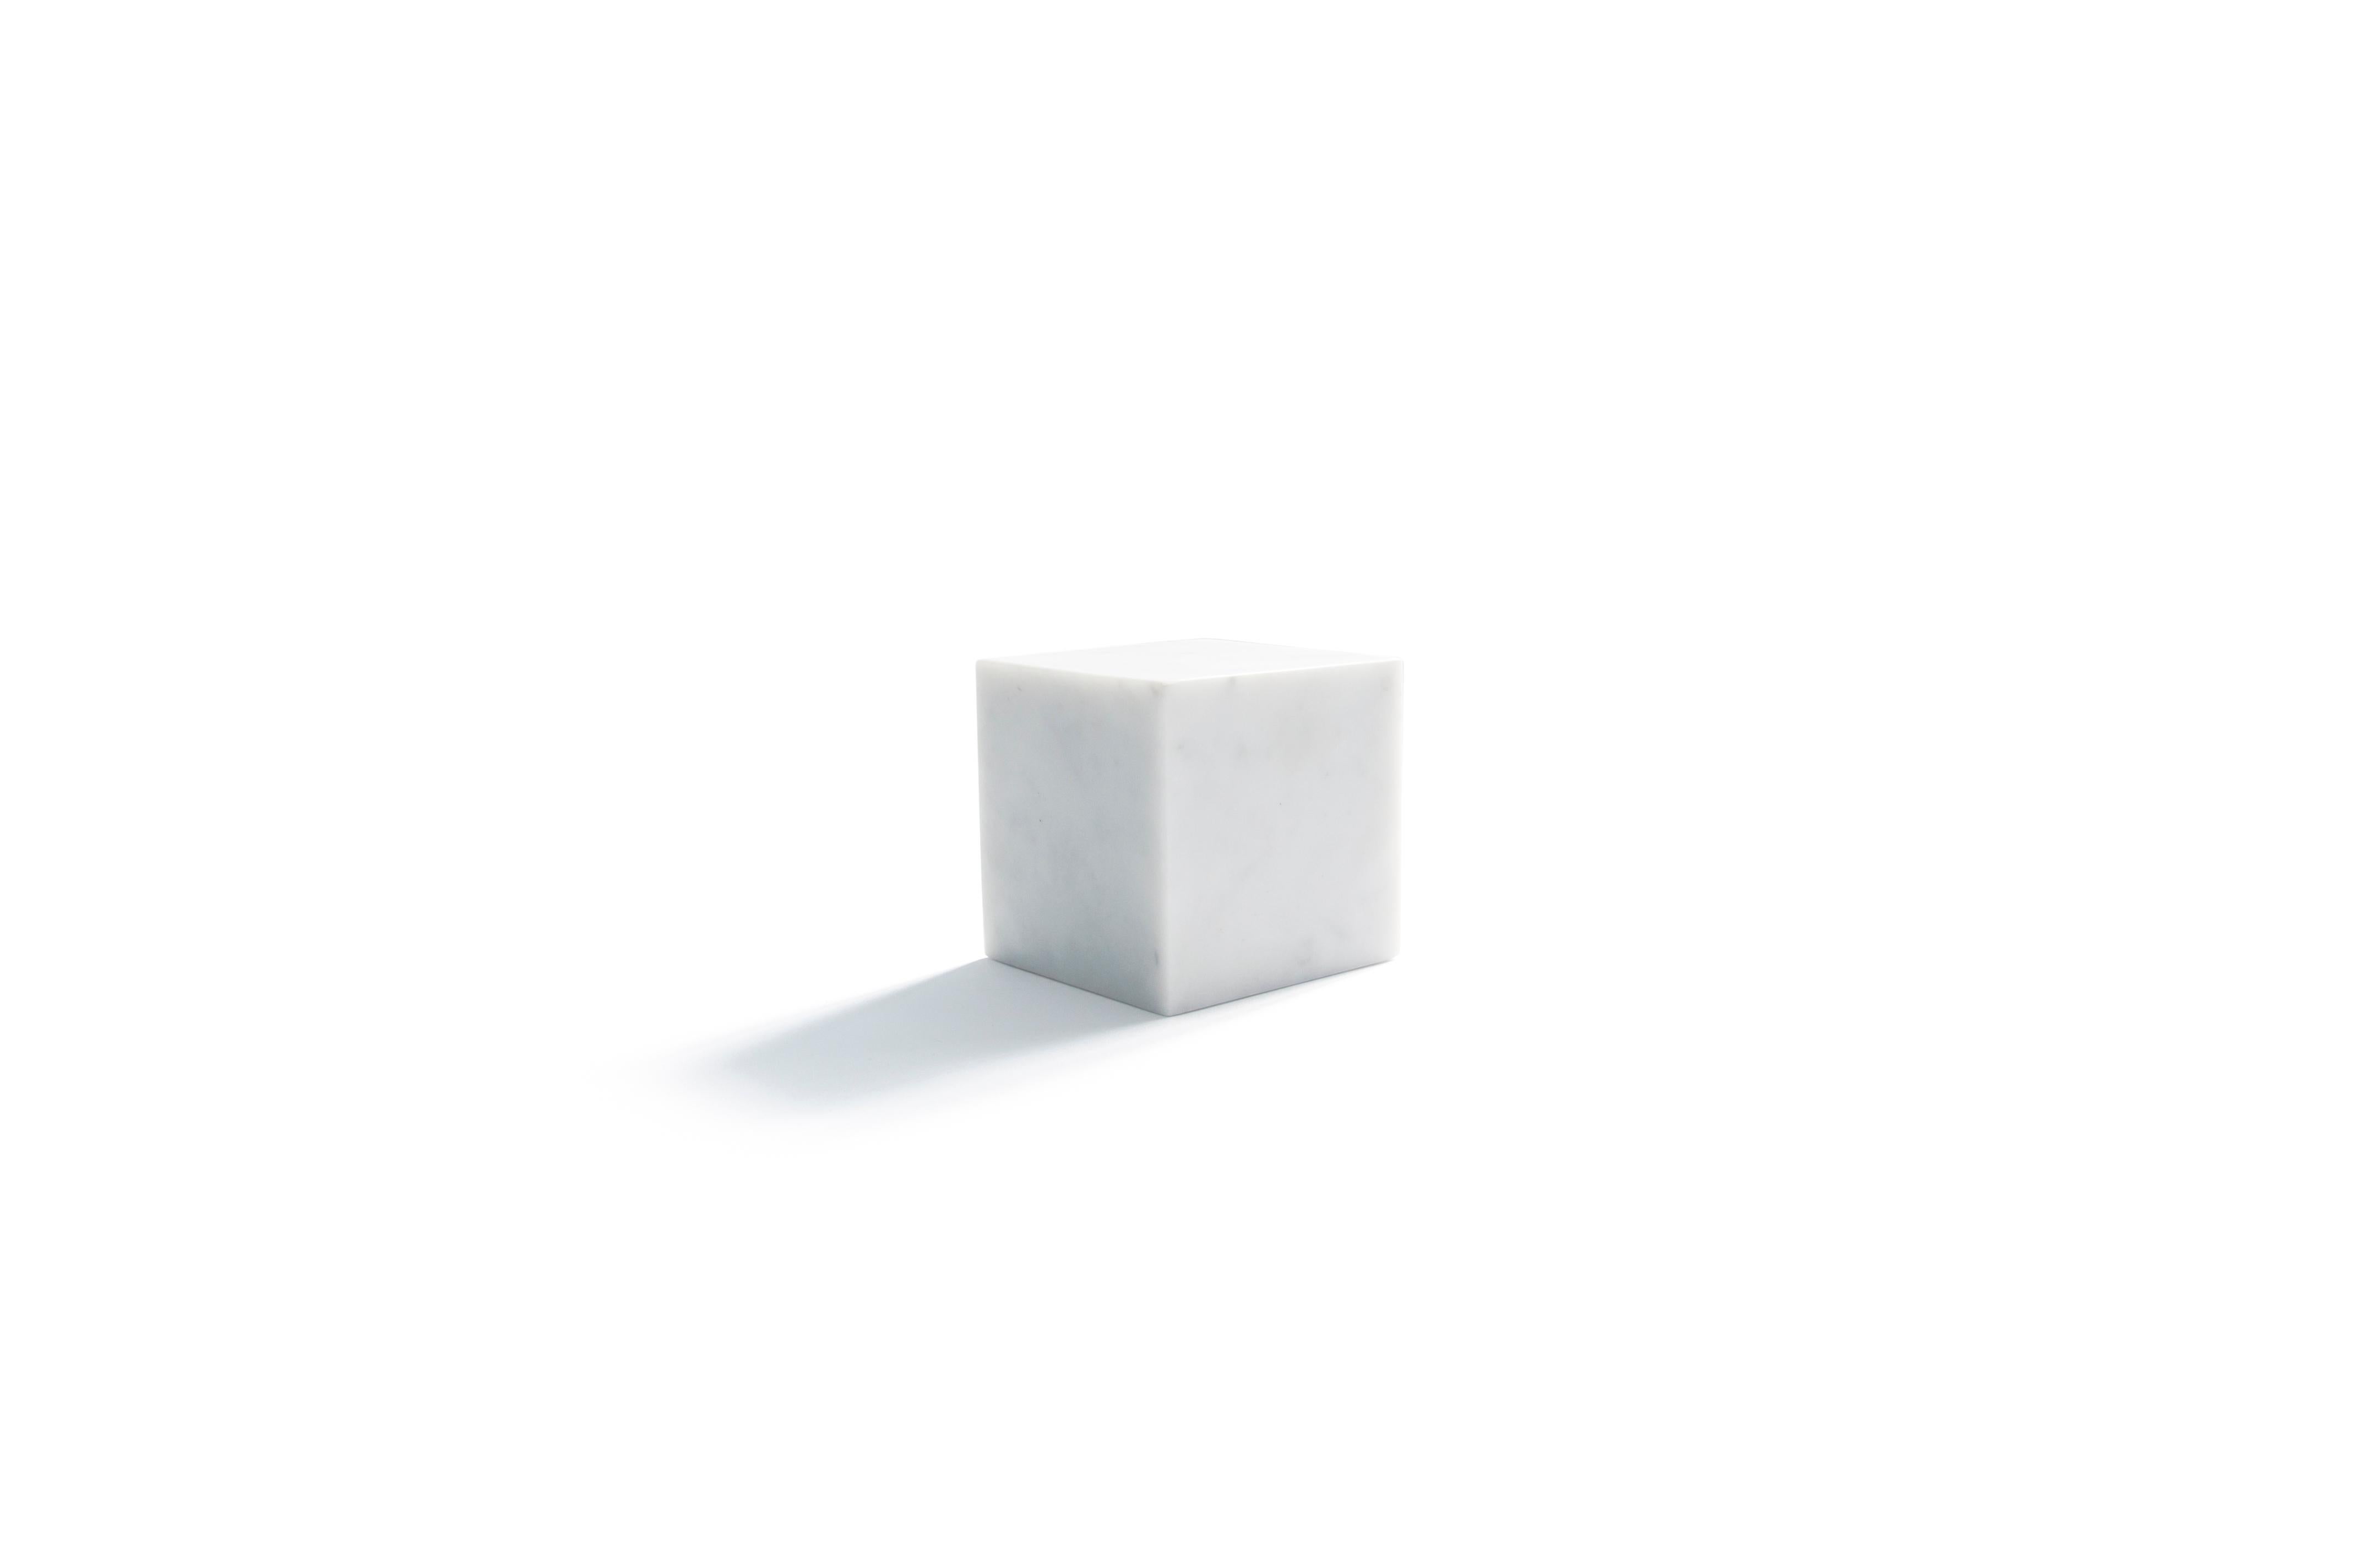 Petit cube presse-papiers décoratif plein en marbre blanc de Carrare. Chaque pièce est en quelque sorte unique (chaque bloc de marbre est différent par ses veines et ses nuances) et fabriquée à la main par des artisans italiens spécialisés depuis